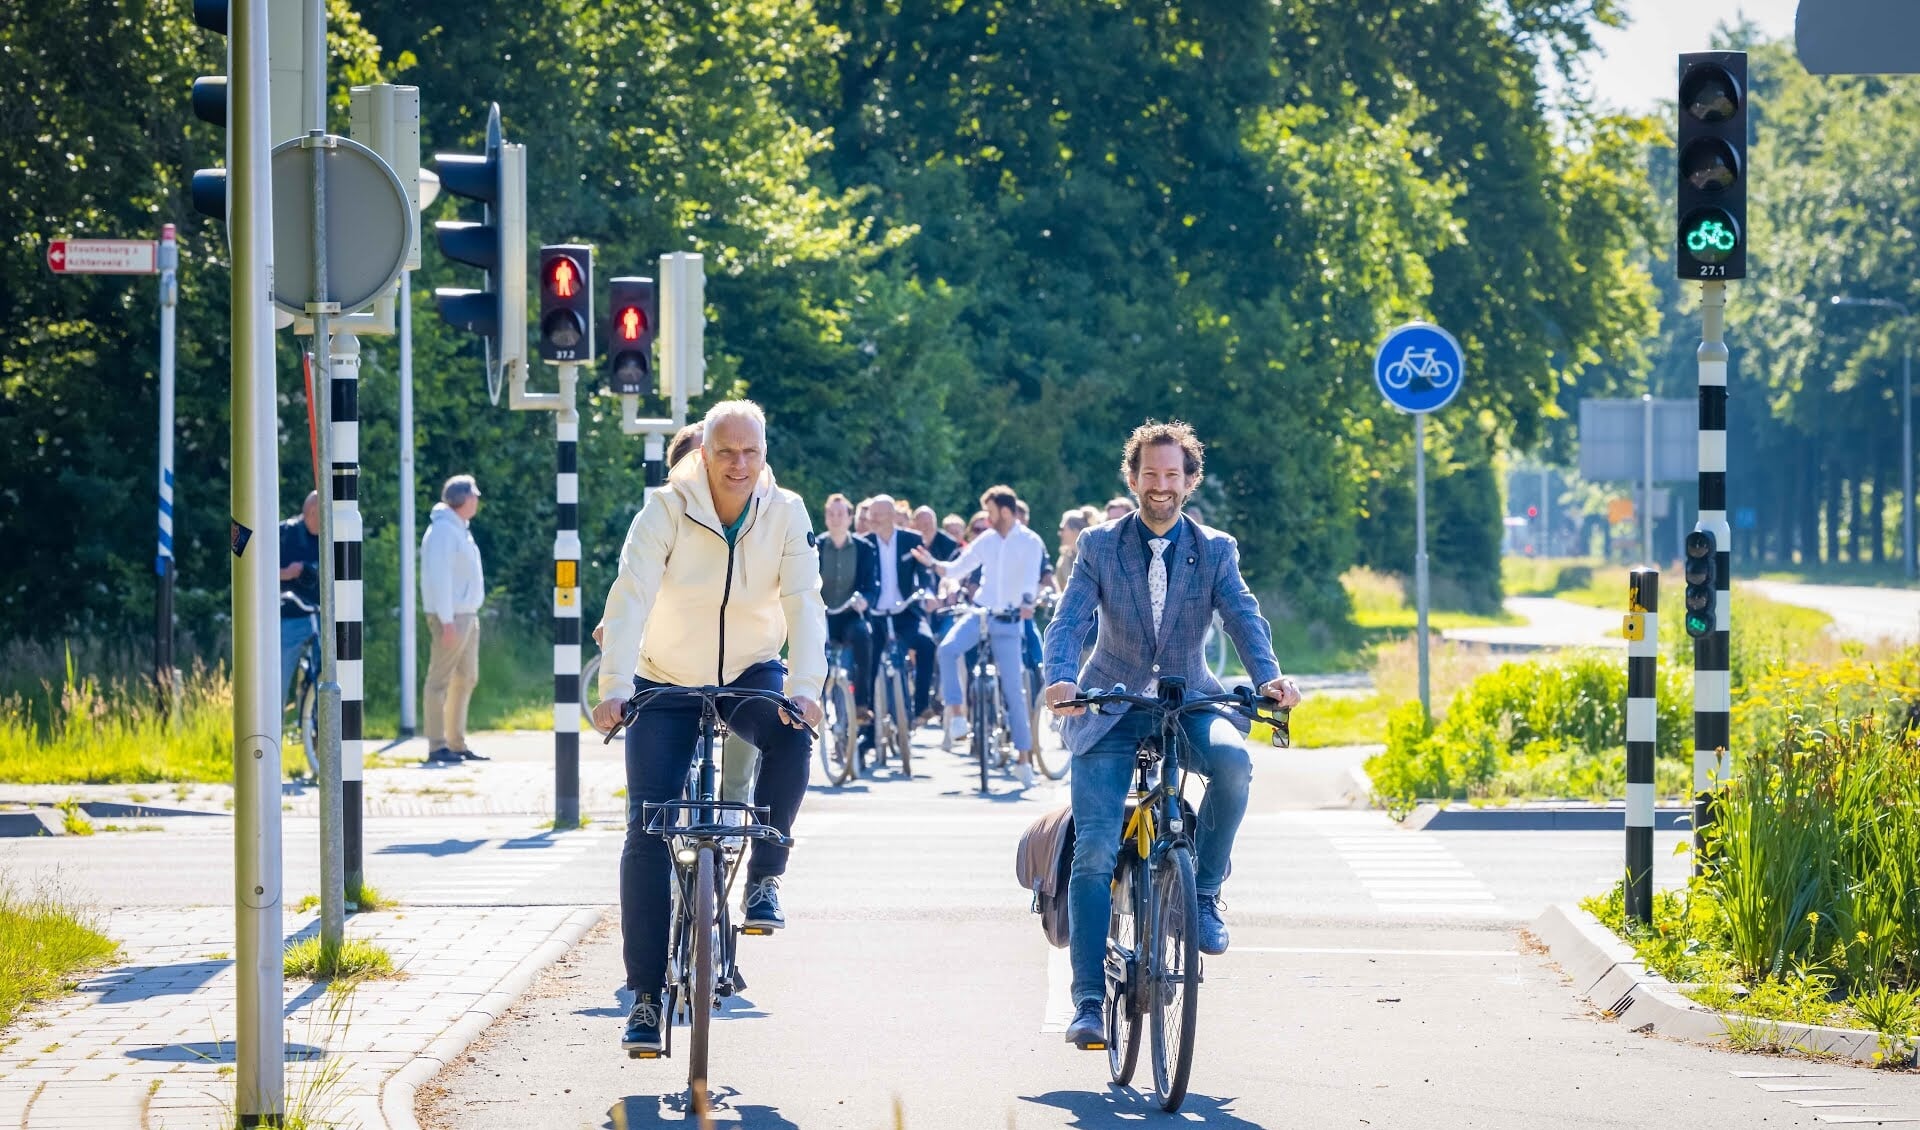 Wethouder Wim Vos van gemeente Leusden en gedeputeerde provincie Utrecht Arne Schaddelee hadden dankzij Schwung de groene golf op het fietspad. Foto: Michiel Ton. 